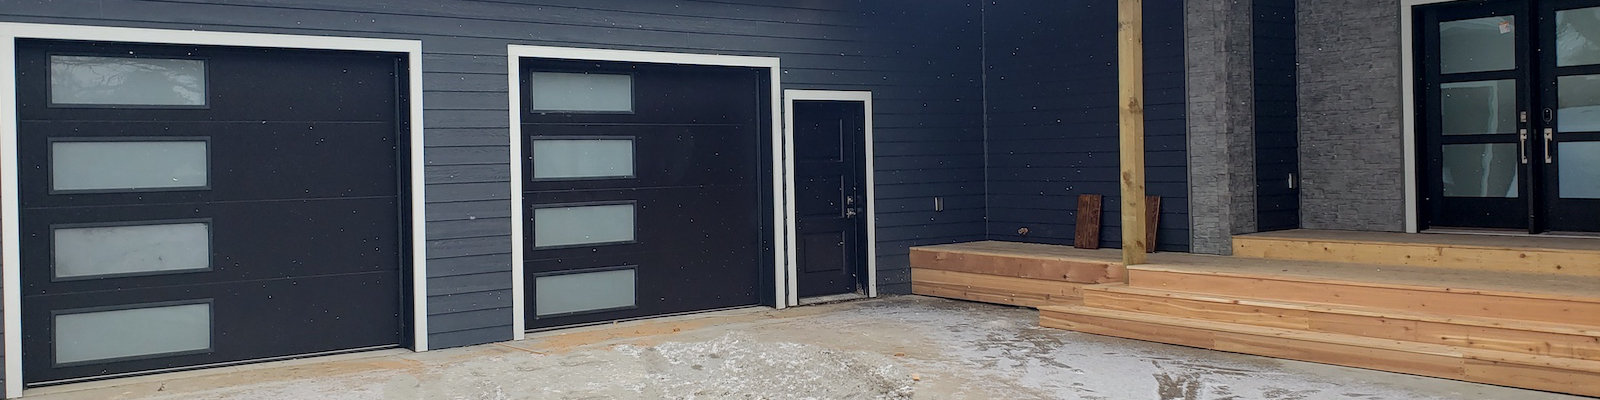 Garage Door Project